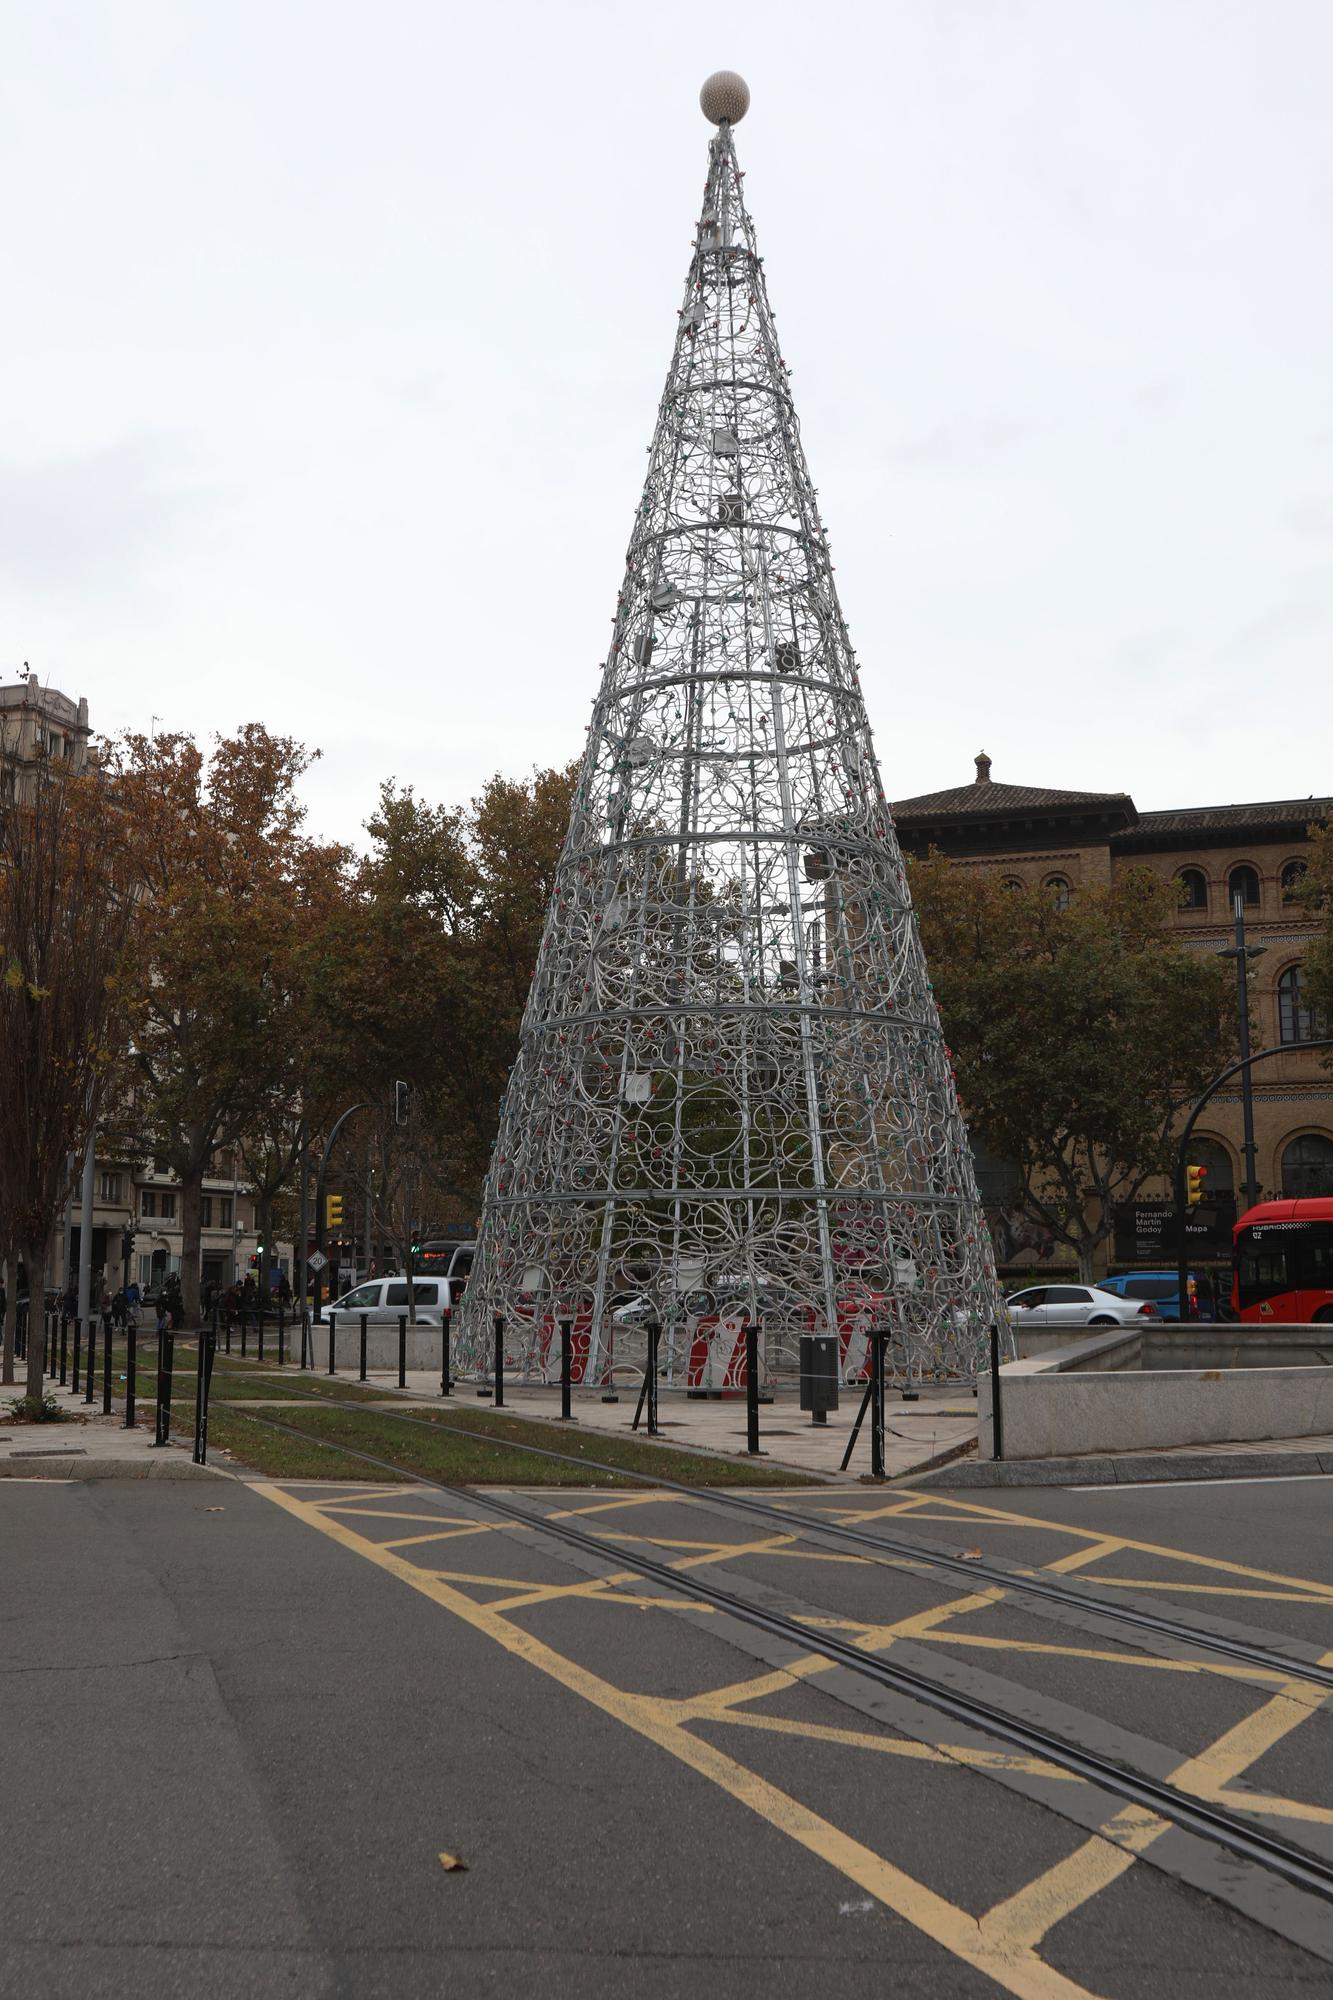 Las calles y los comercios de Zaragoza preparan su decoración navideña